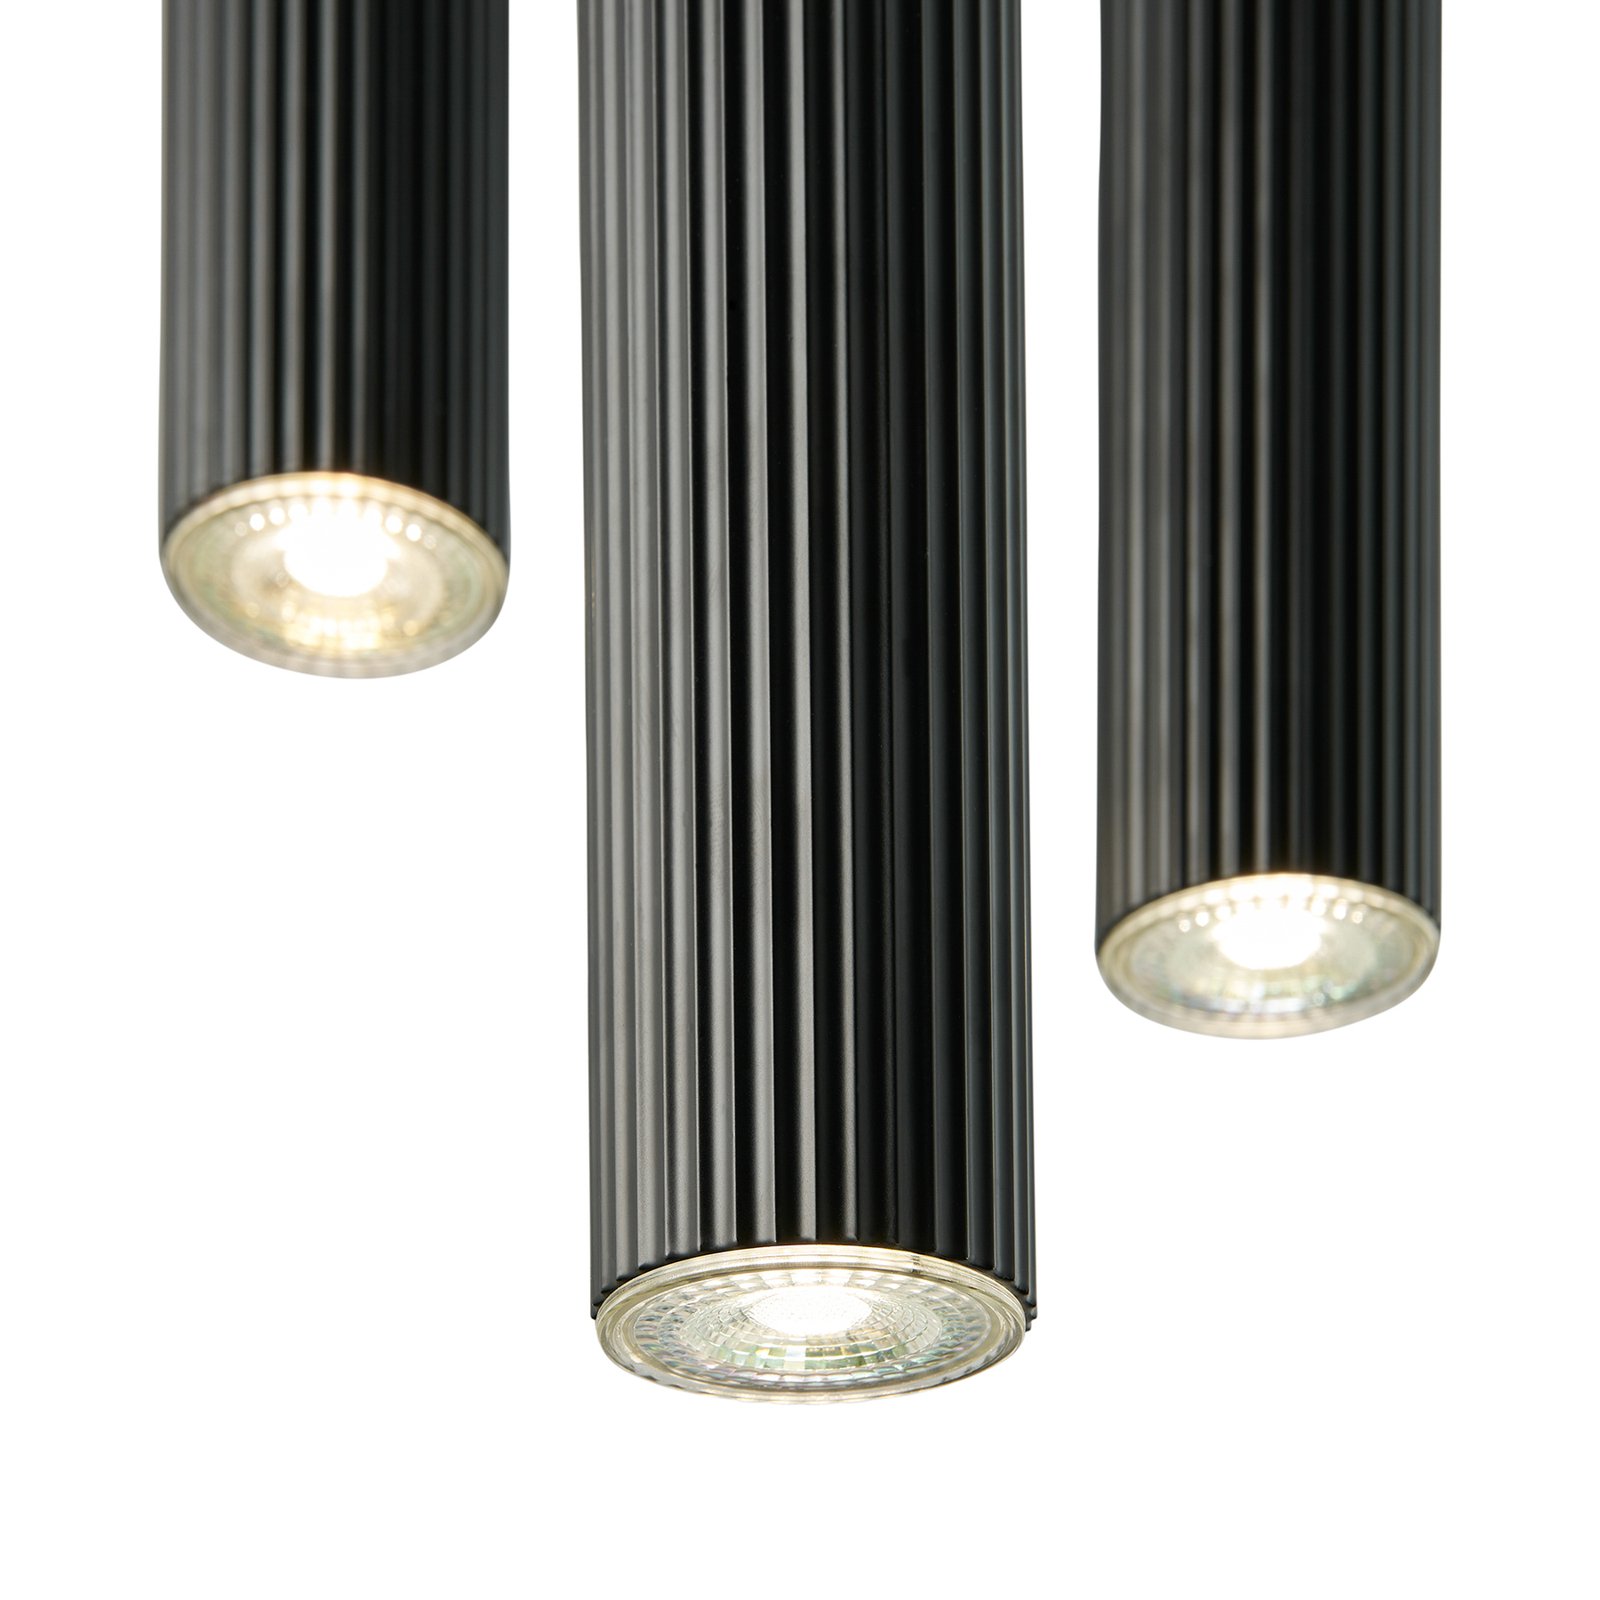 Viseća svjetiljka Vico, tri žarulje, okrugla, metalna, crna